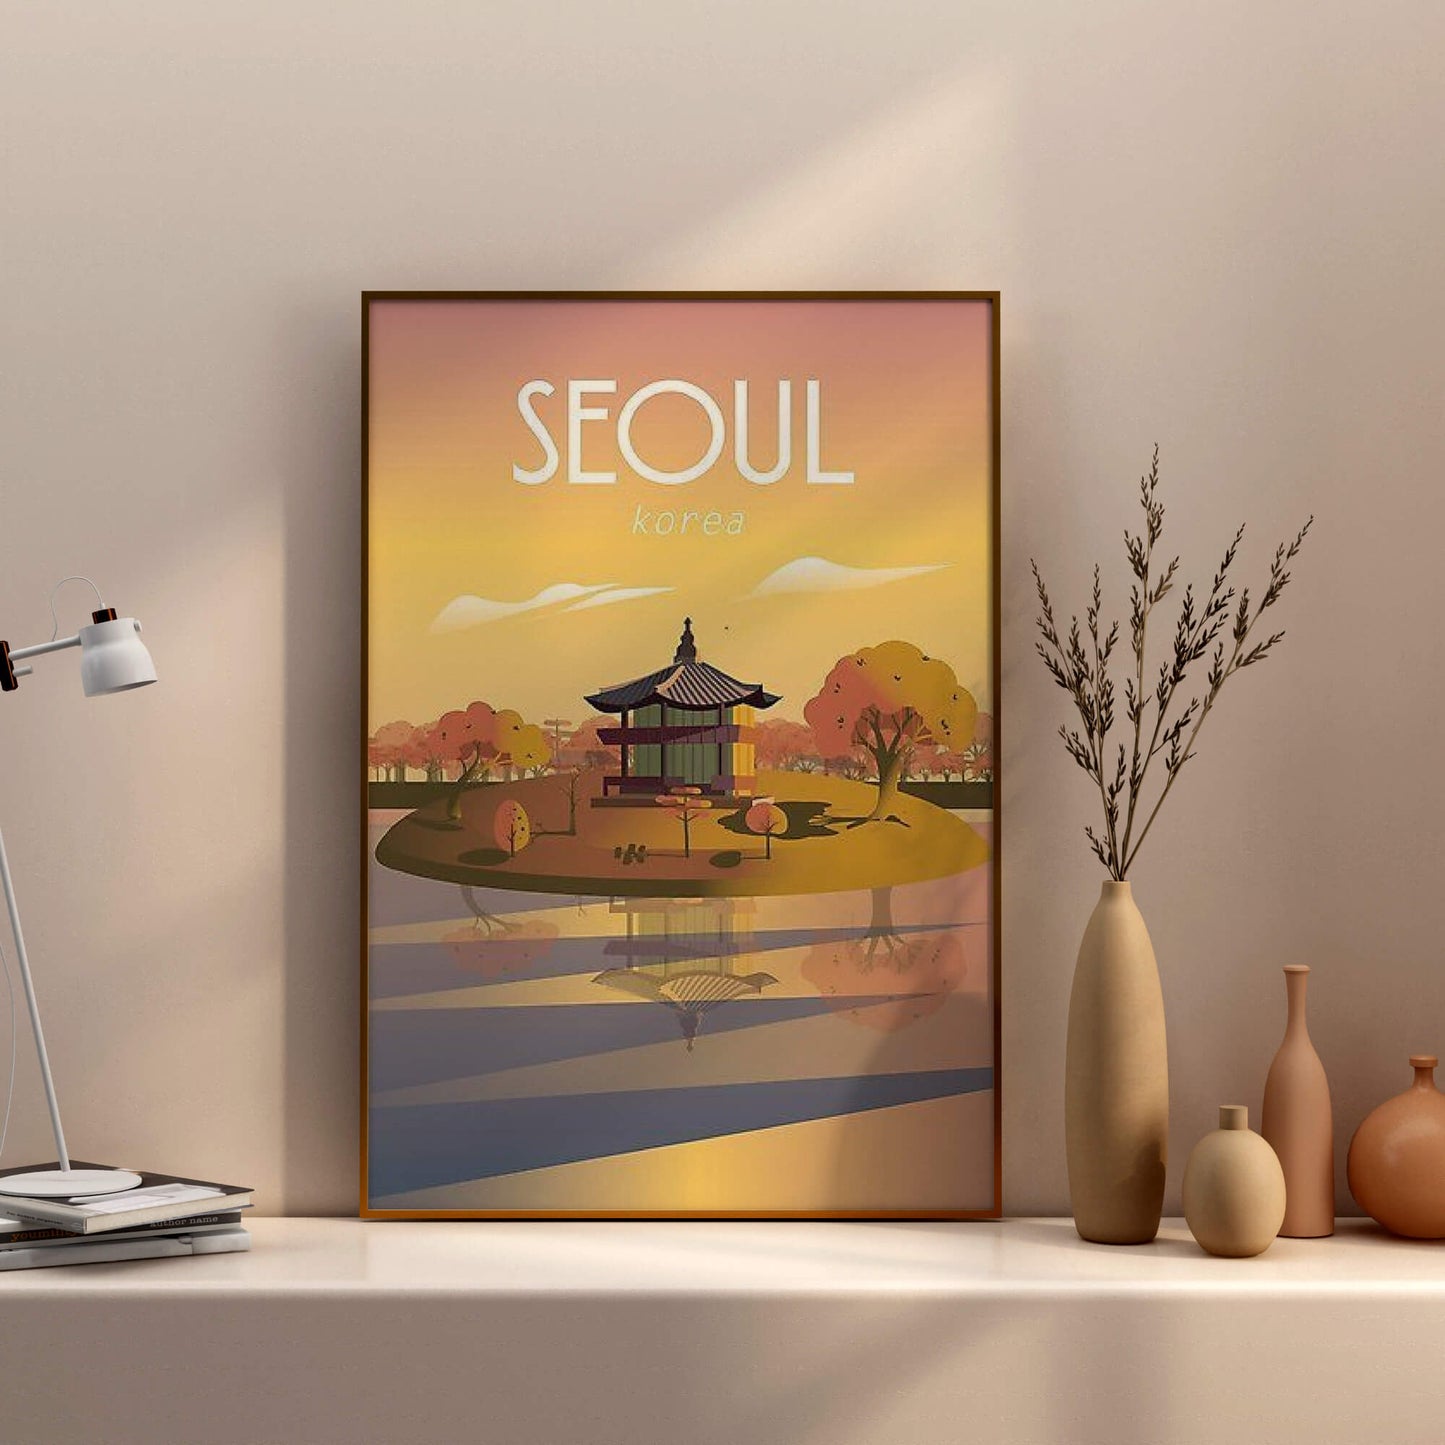 Seoul Korea---